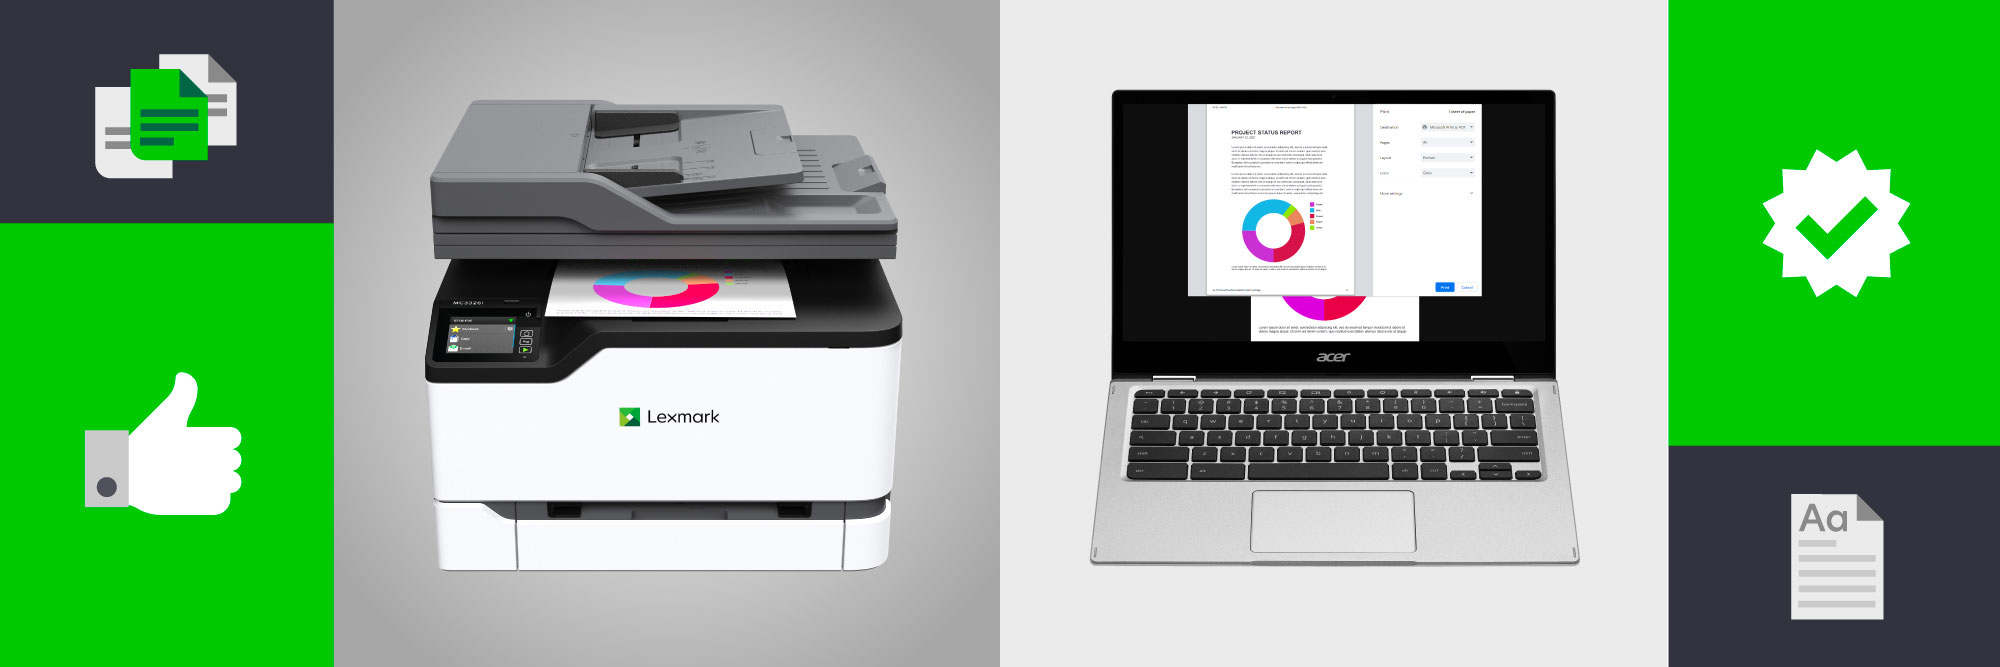 Best printer for Chromebook Lexmark SMB